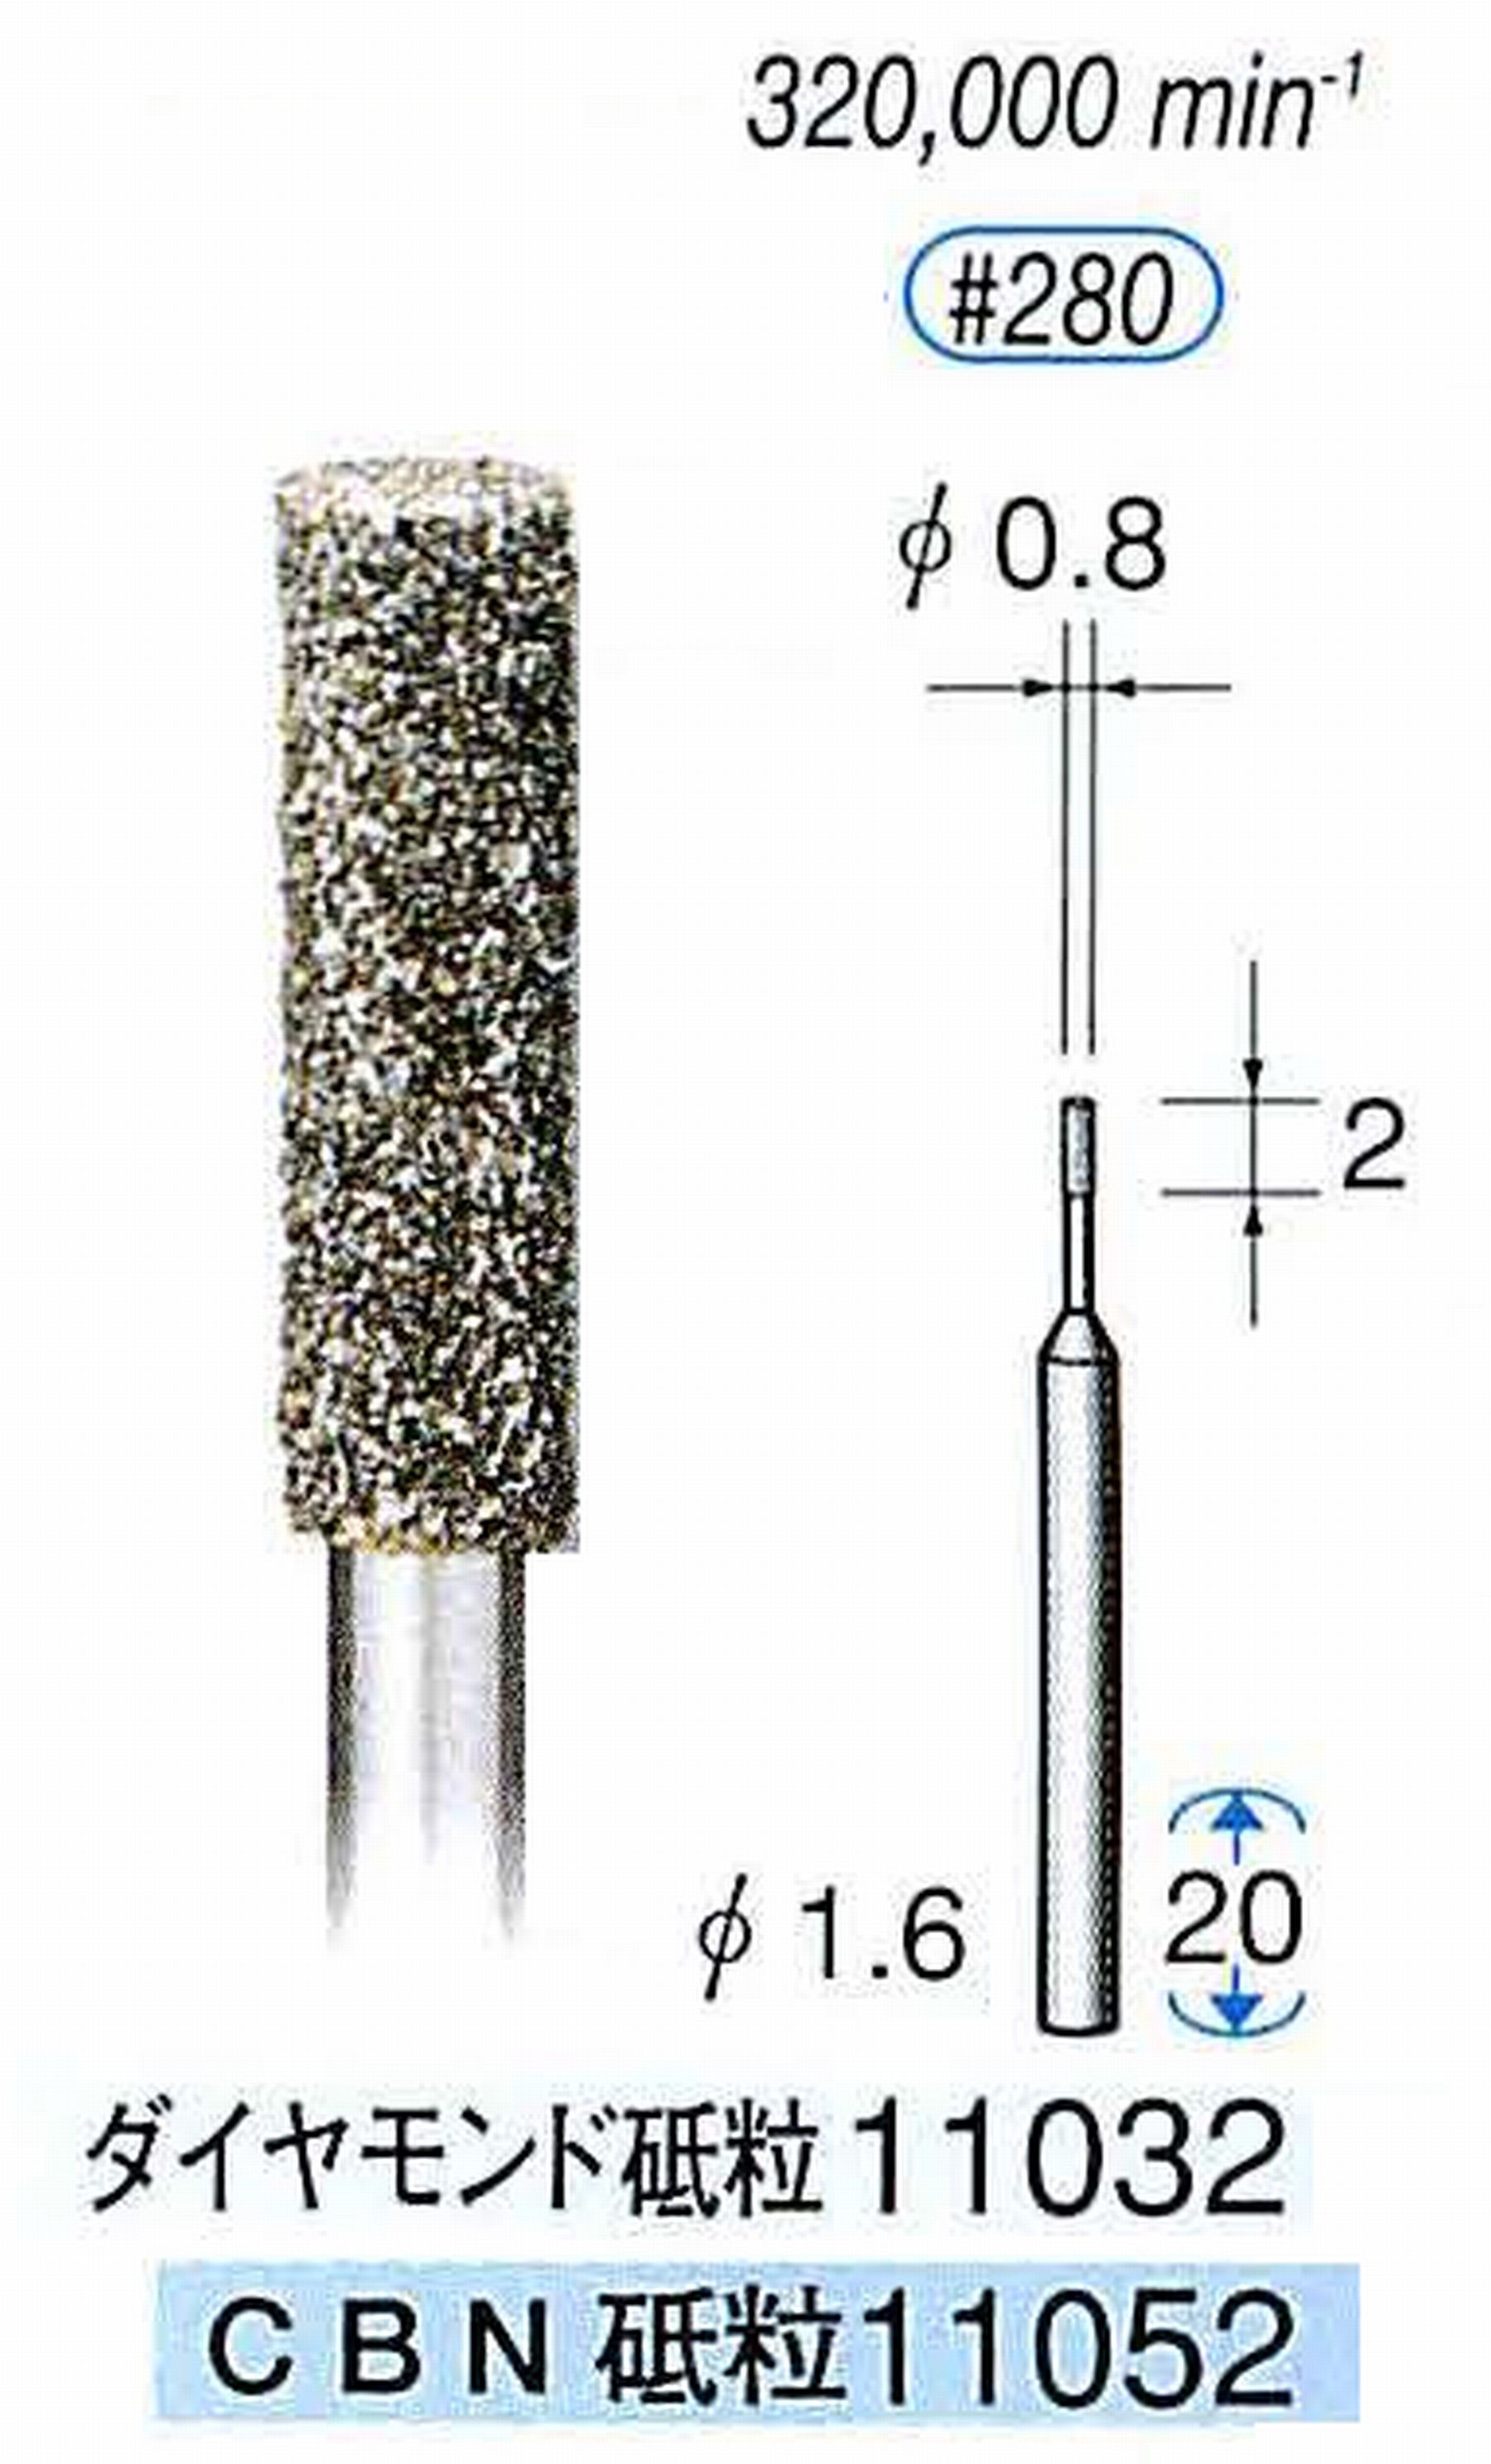 ナカニシ/NAKANISHI 電着CBNバー(ミニチュアタイプ)CBN砥粒 軸径(シャンク)φ1.6mm 11052